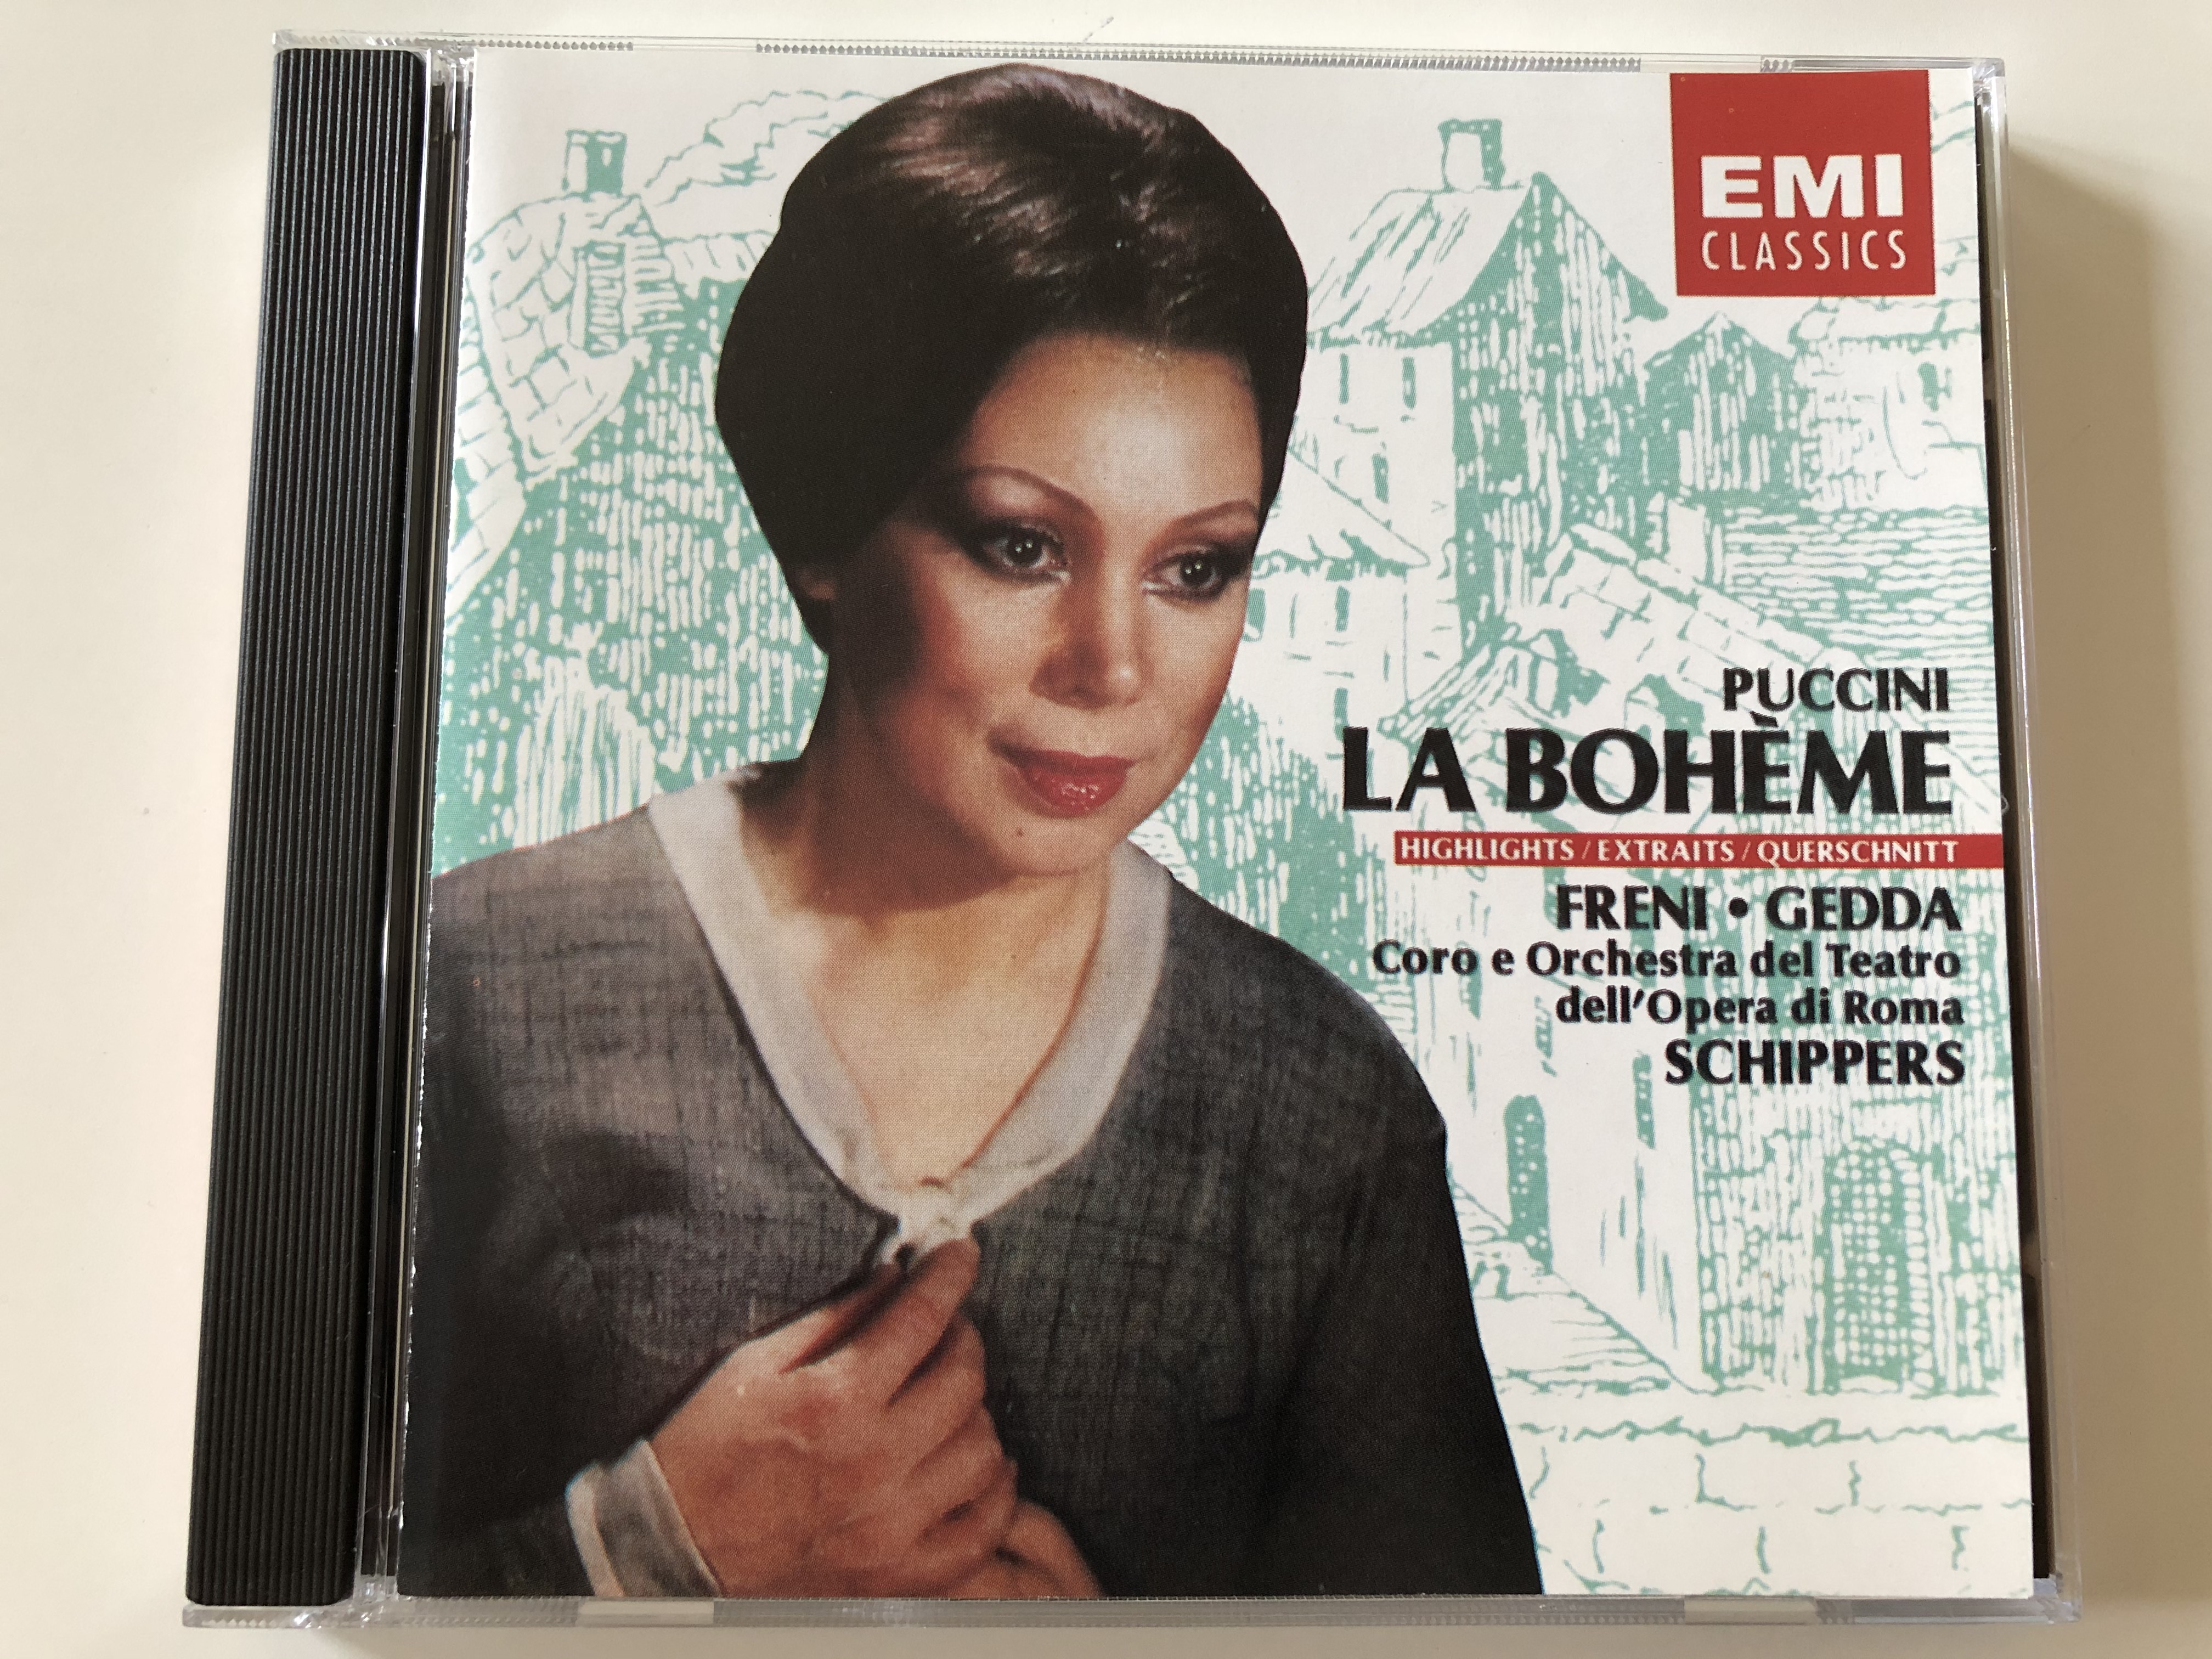 puccini-la-boh-me-highlightsextraitsquerschnitt-freni-gedda-coro-e-orchestra-del-teatro-dell-opera-di-roma-schippers-emi-records-ltd.-audio-cd-1991-stereo-cdm-7-63932-2-1-.jpg